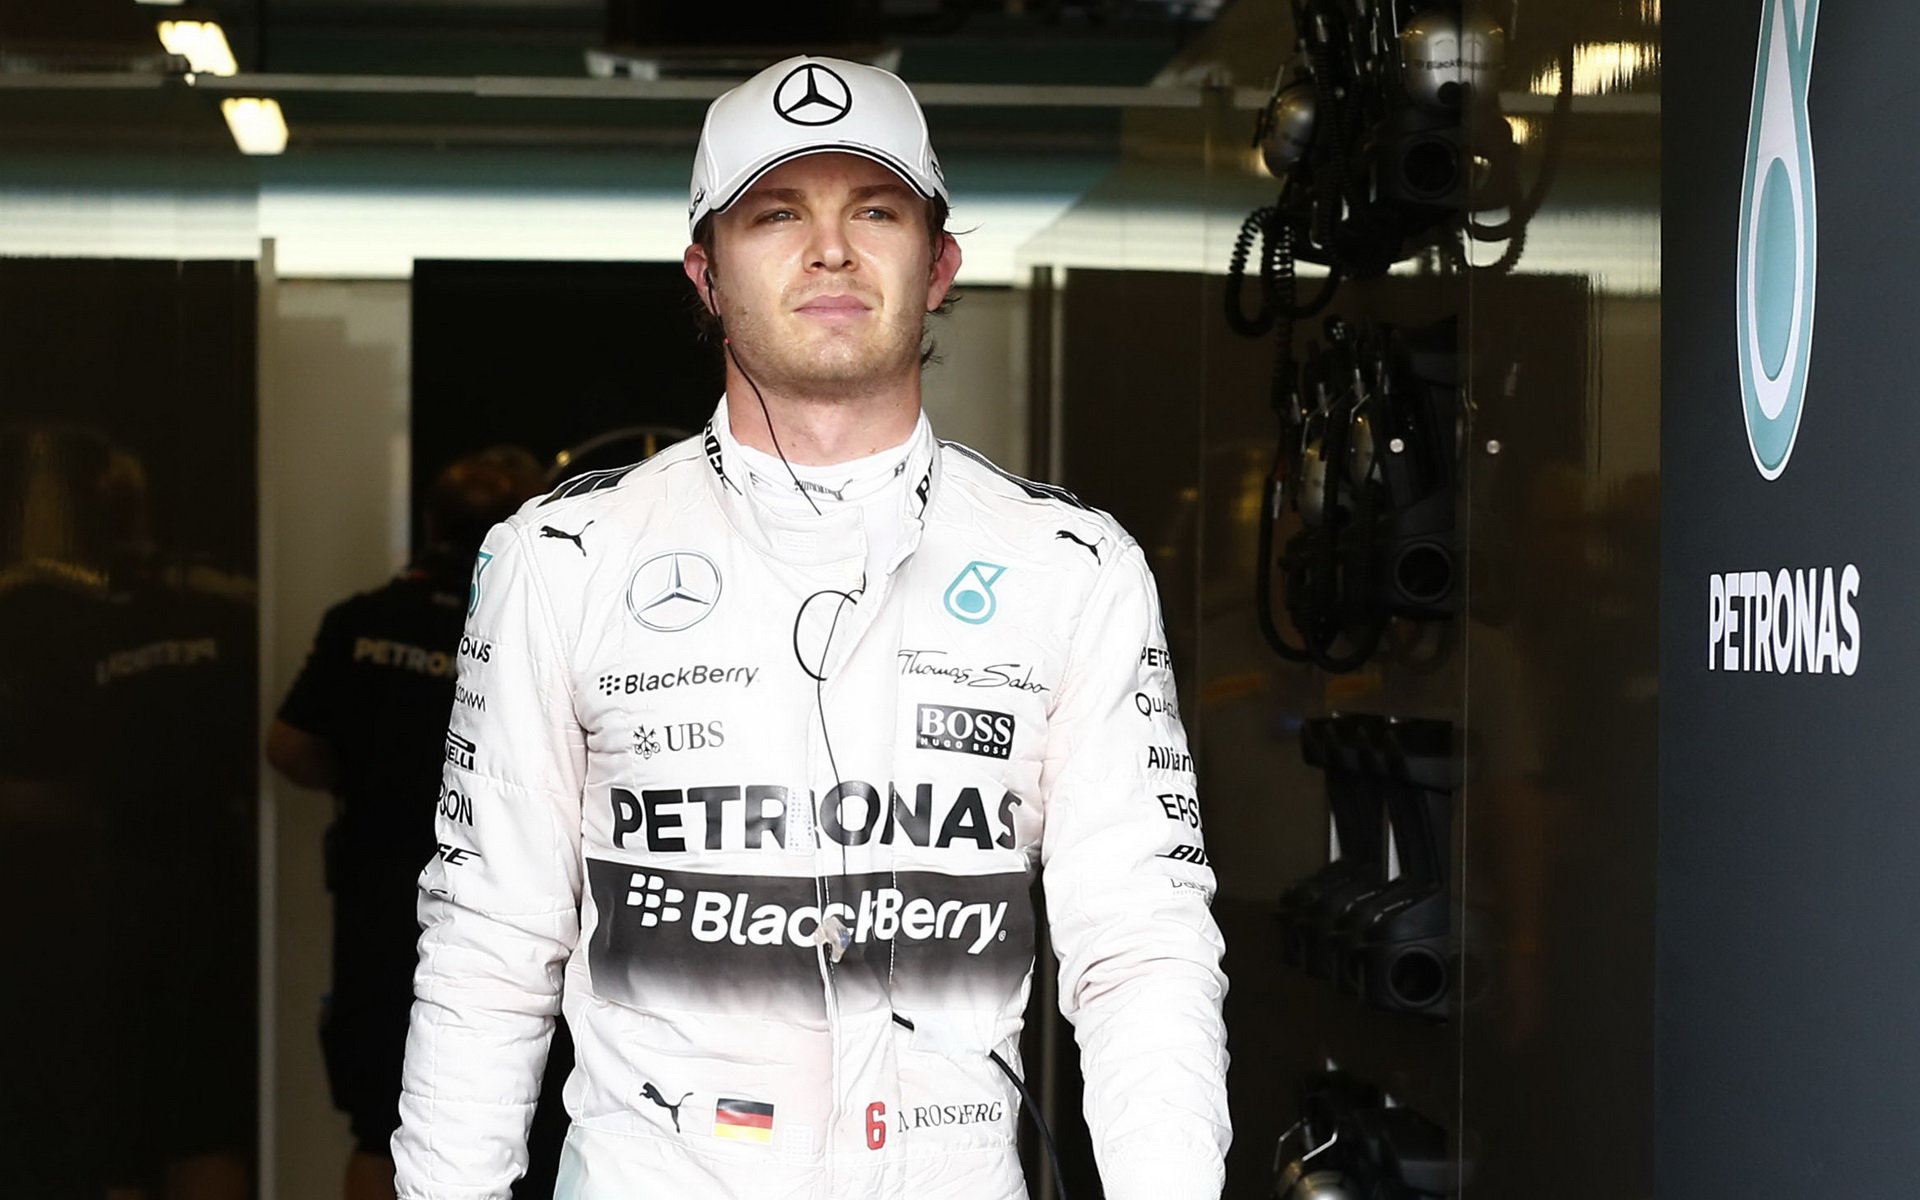 Rosberg se rozhovořil i o mimozávodních aktivitách